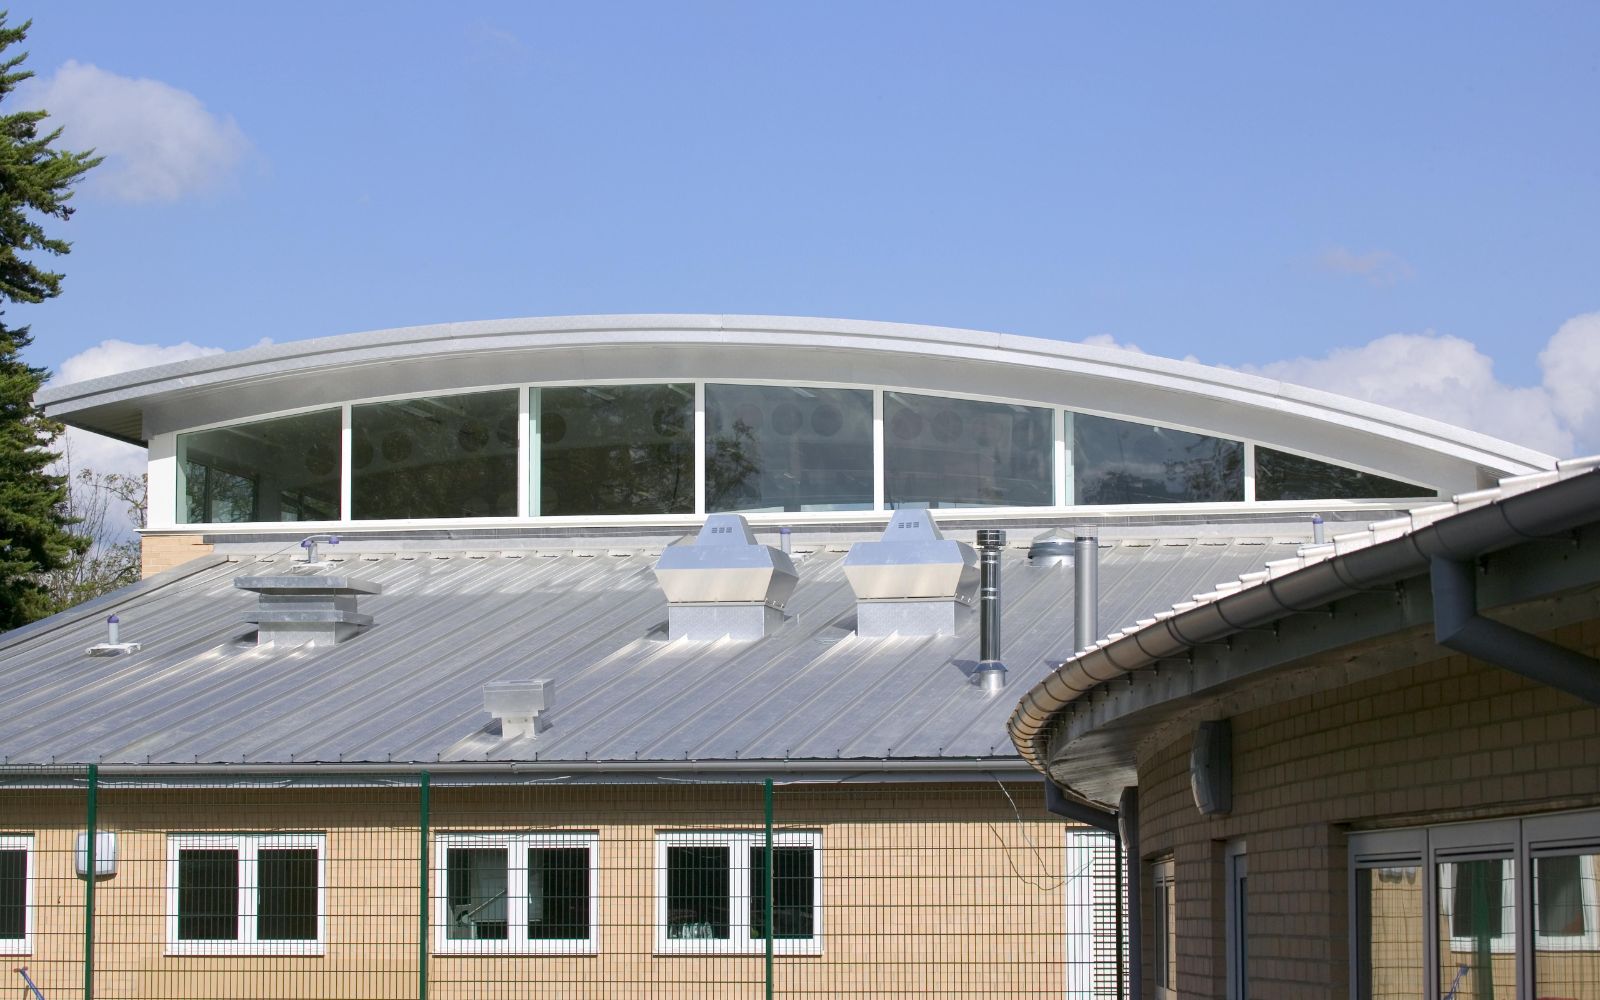 Frith manor school aluminium windows